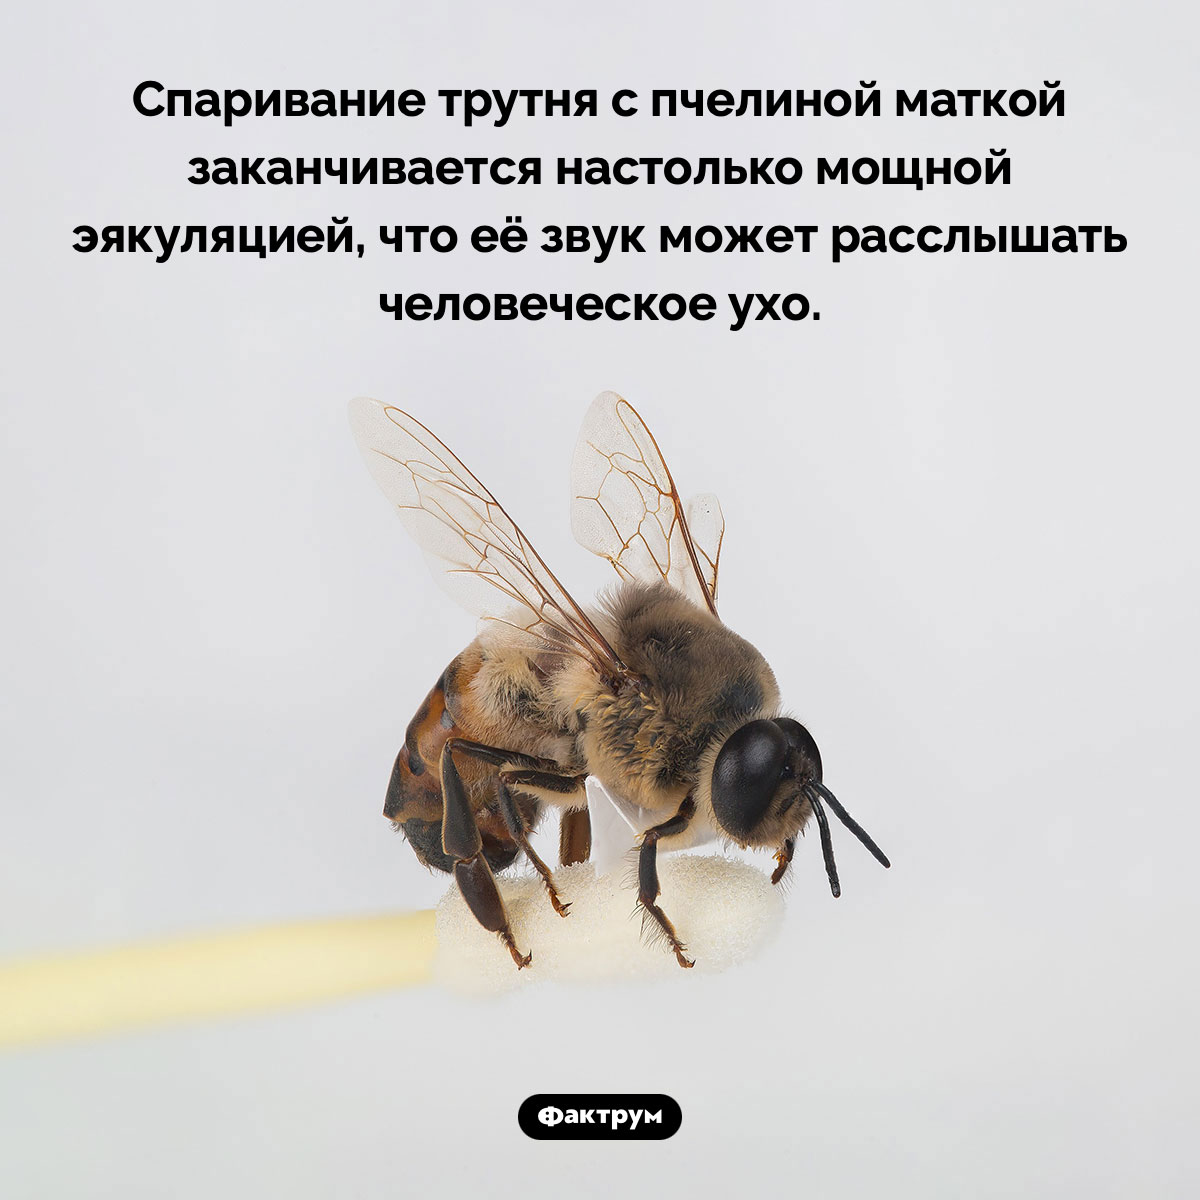 Спаривание трутня с пчелиной маткой. Спаривание трутня с пчелиной маткой заканчивается настолько мощной эякуляцией, что её звук может расслышать человеческое ухо.